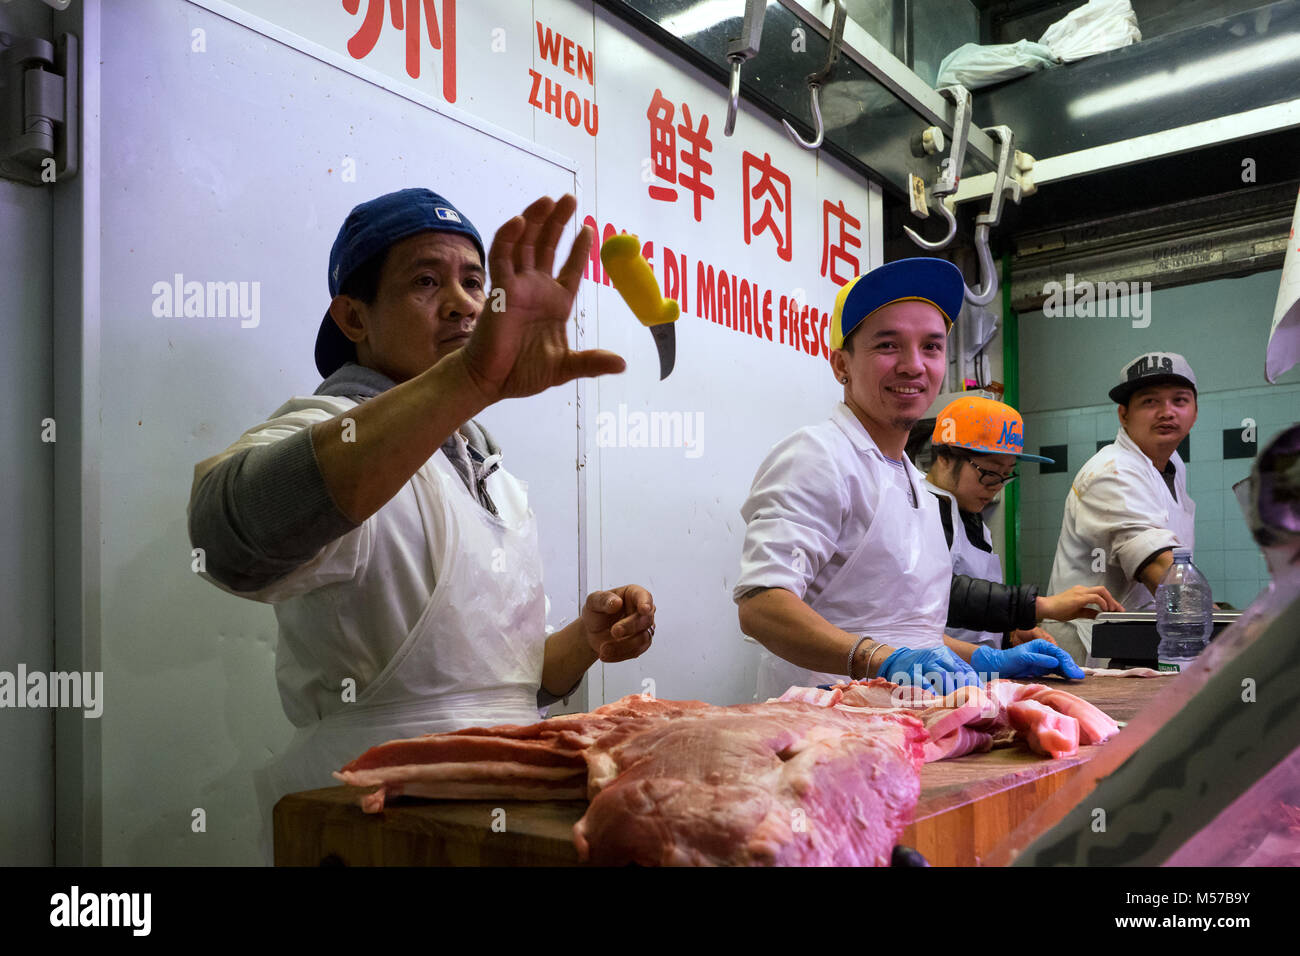 Roma, Italia: Algunos carniceros, la intención de cortar carne, jugar juegos de habilidad con el cuchillo en una carnicera China en el mercado de la plaza Vittorio Foto de stock